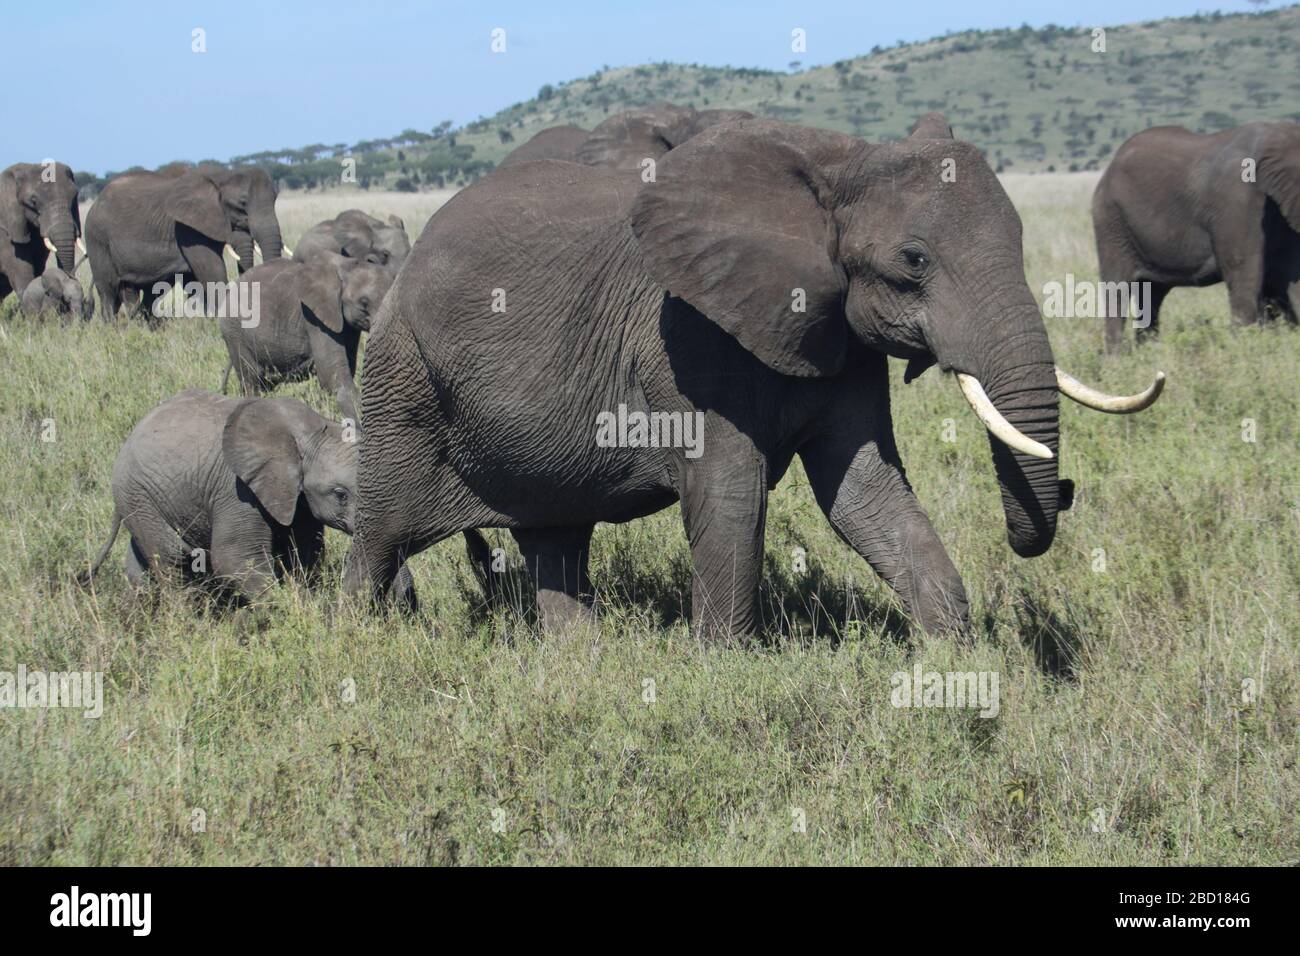 Una manada de elefantes africanos (Loxodonta africana) con sus jóvenes. Fotografiado en Tanzania Foto de stock